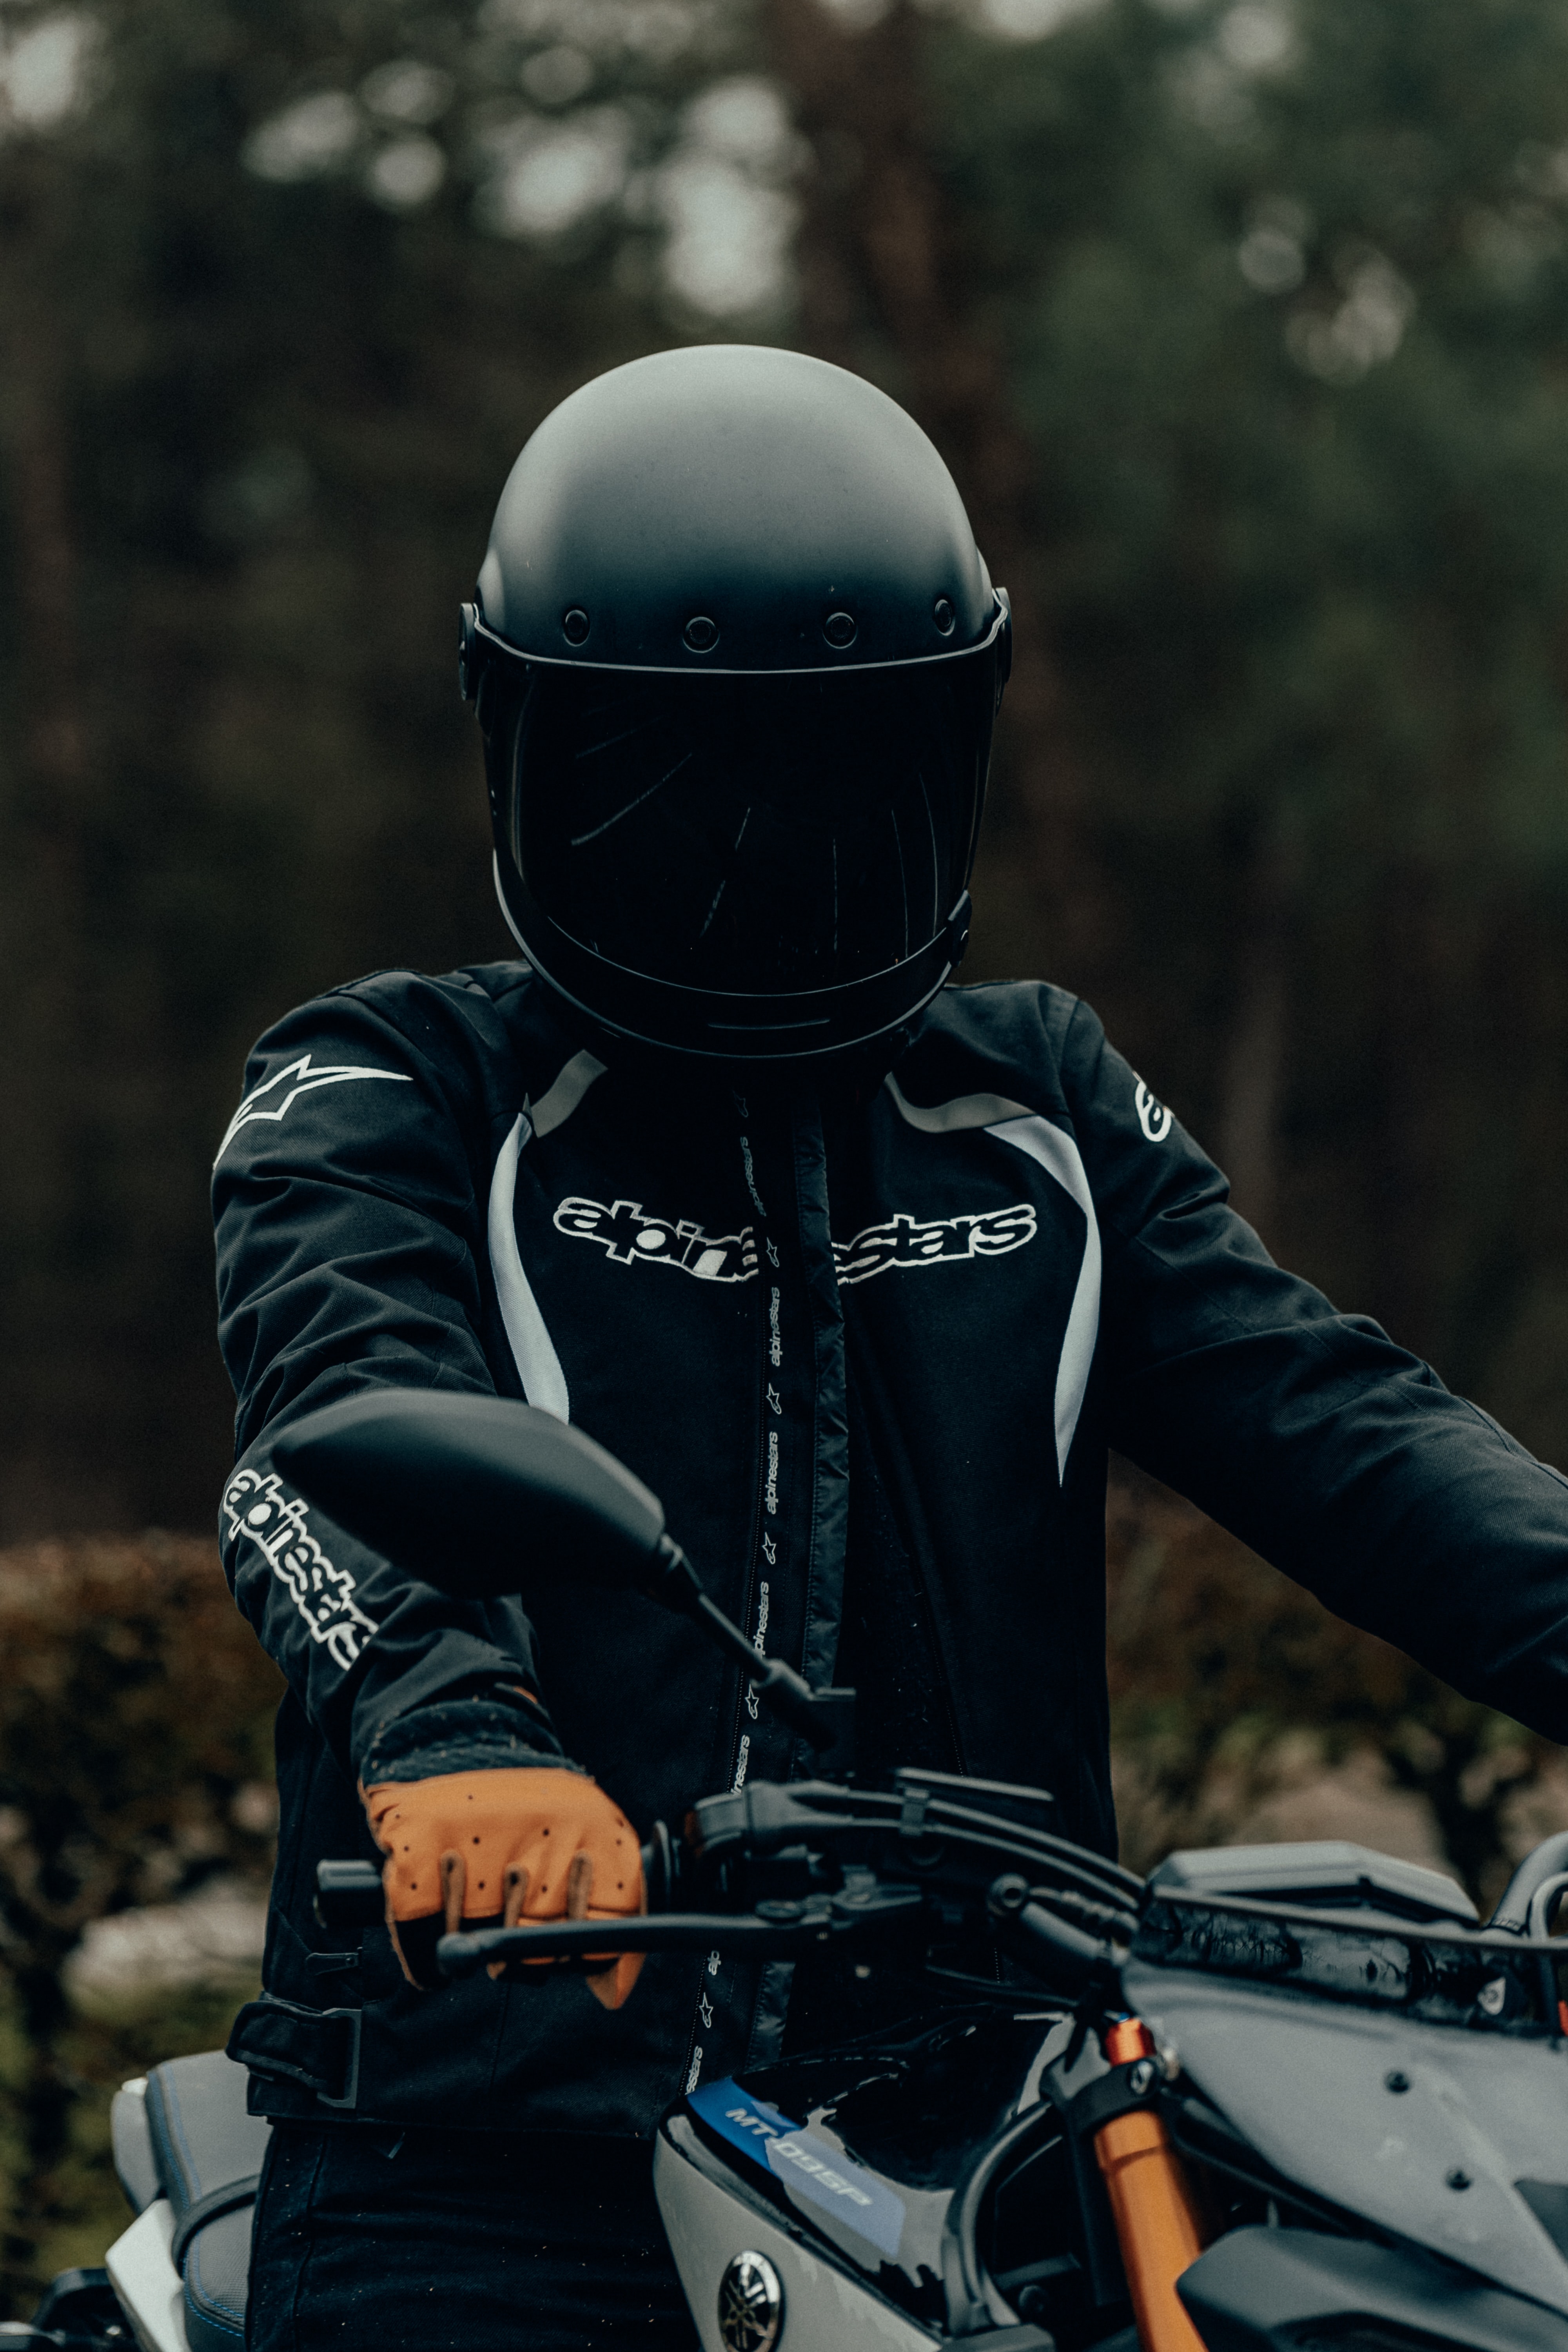 motorcycles, motorcyclist, helmet, motorcycle, steering wheel, rudder HD for desktop 1080p